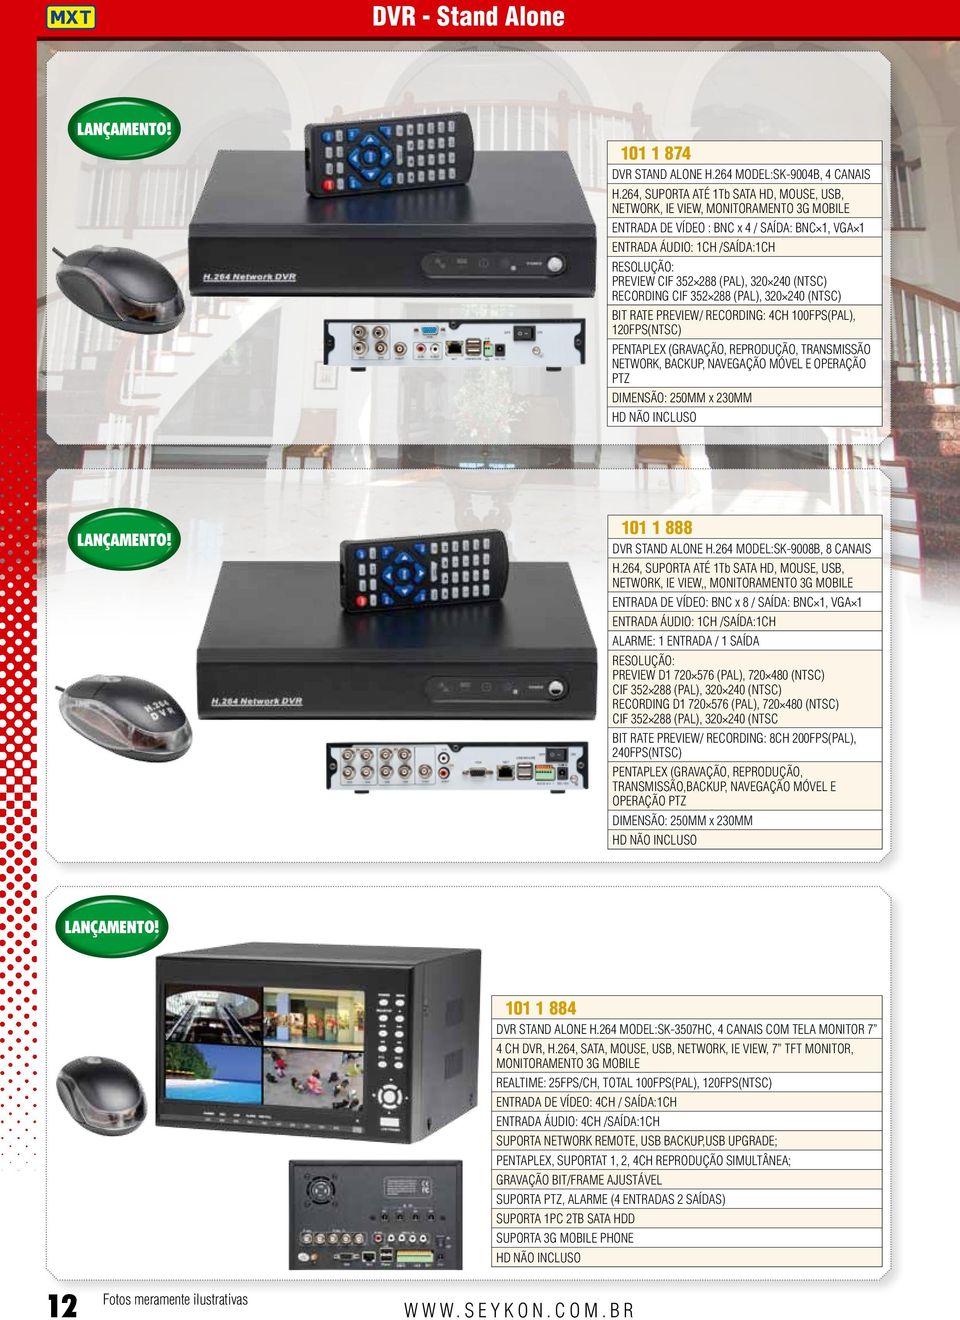 (PAL), 320 240 (NTSC) Recording CIF 352 288 (PAL), 320 240 (NTSC) Bit rate Preview/ recording: 4ch 100fps(PAL), 120fps(NTSC) Pentaplex (gravação, reprodução, transmissão network, backup, navegação